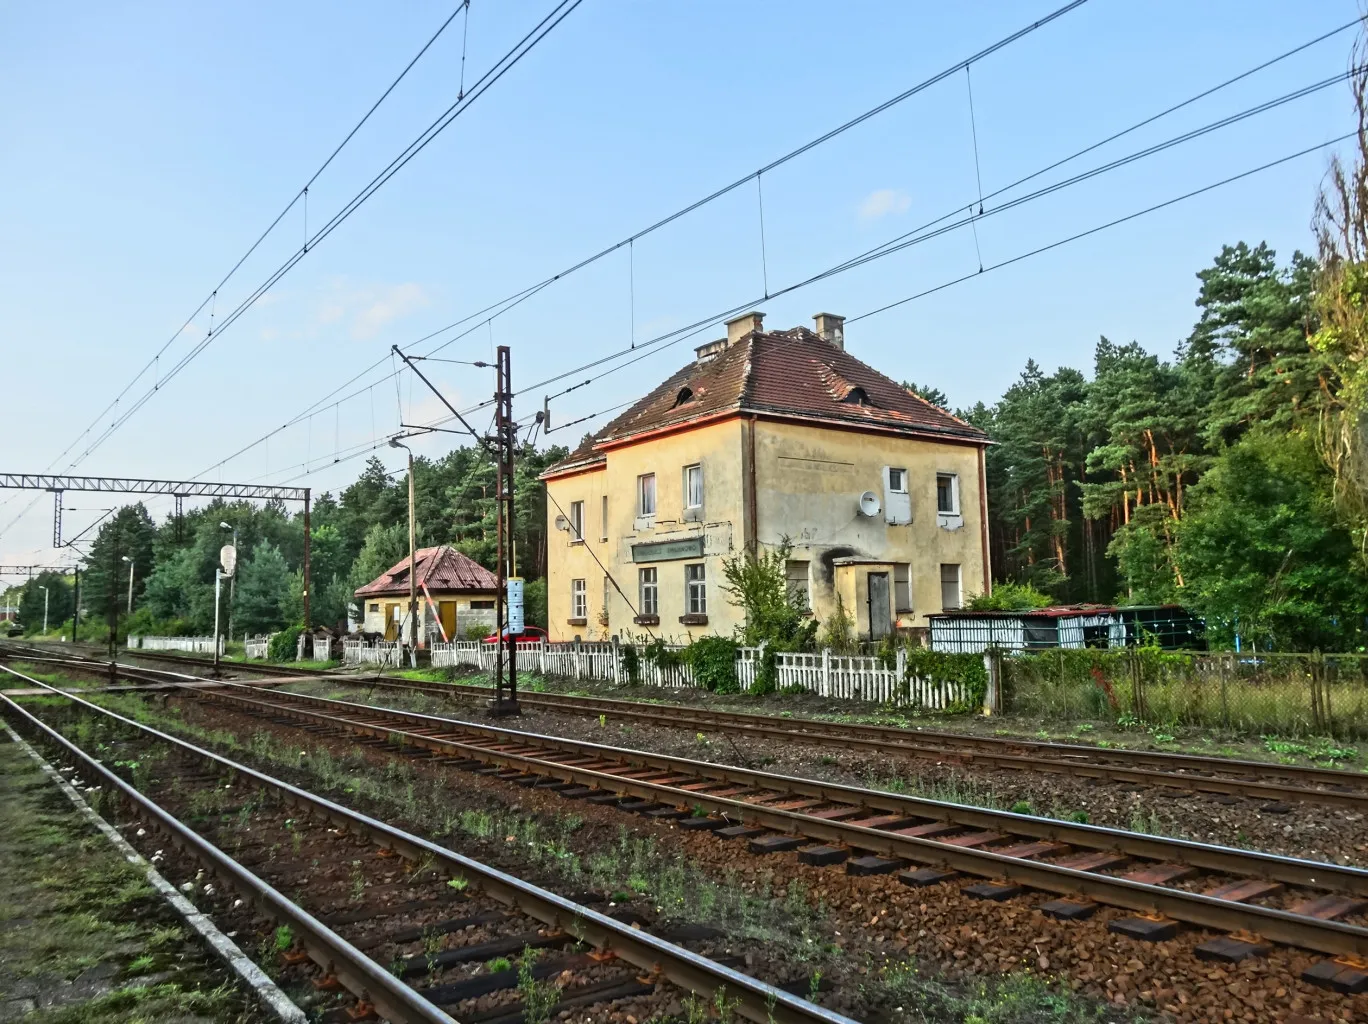 Photo showing: Stacja kolejowa Bydgoszcz Emilianowo w Puszczy Bydgoskiej